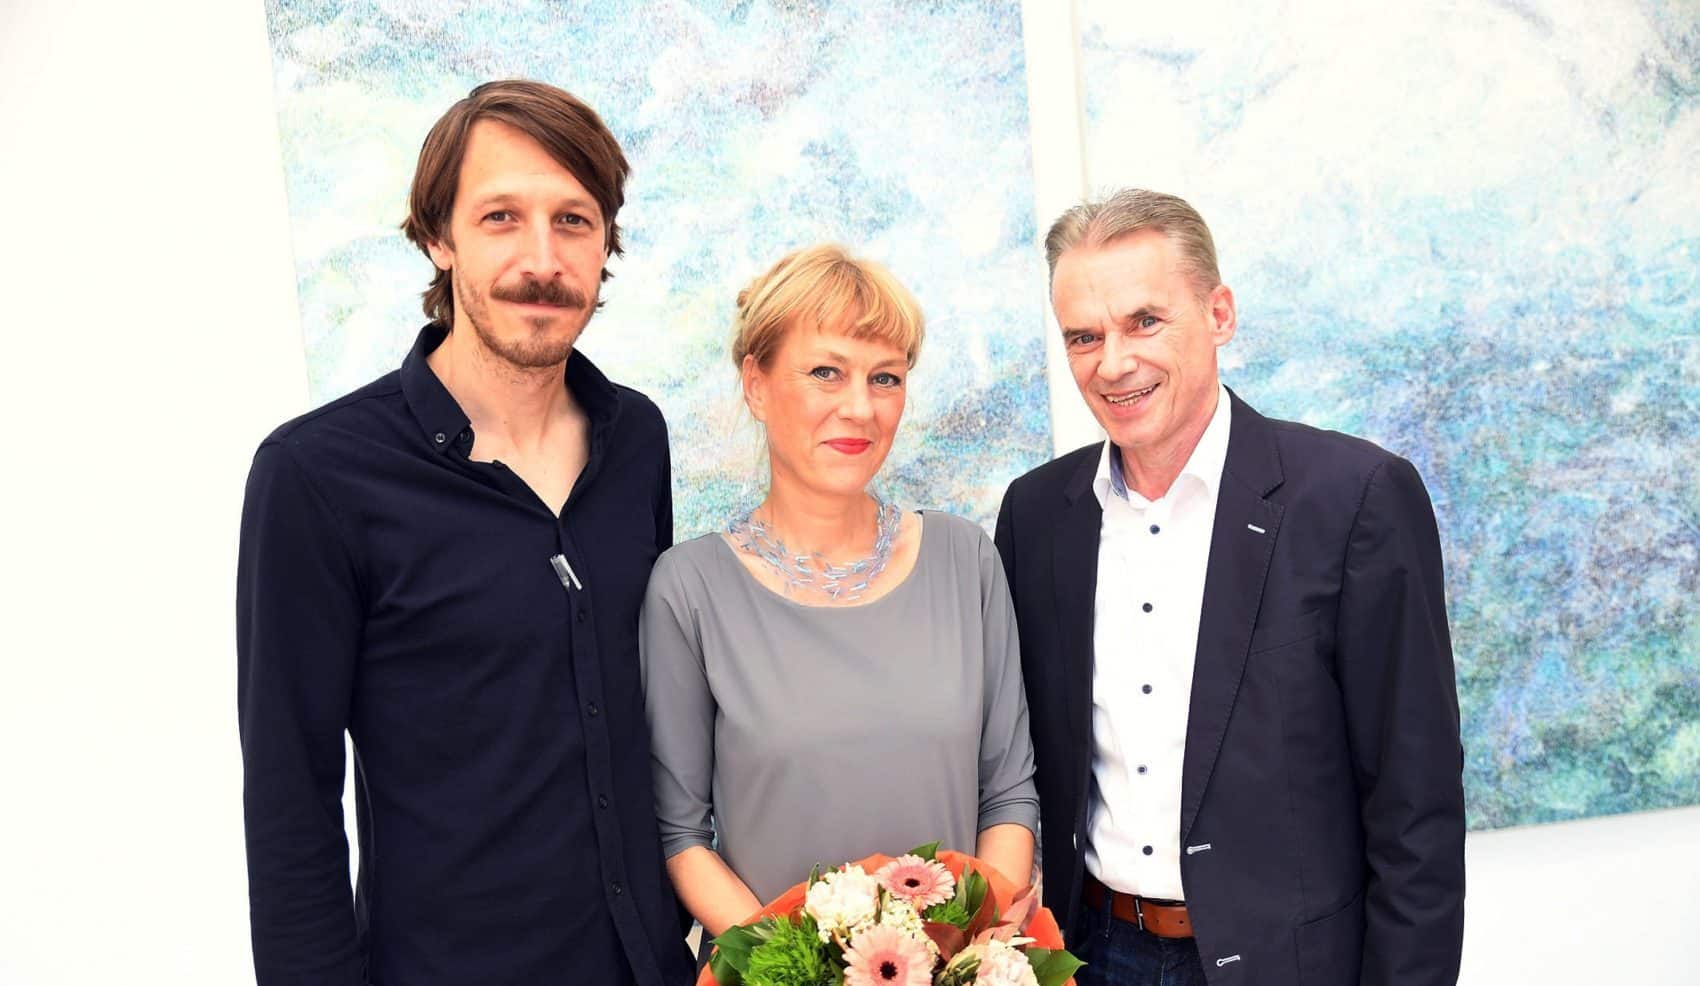 Lena Freimüller, Thorsten Krieger und Bürgermeister Ferdinand Vouk bei der Eröffnung der Galerie3 in Velden.